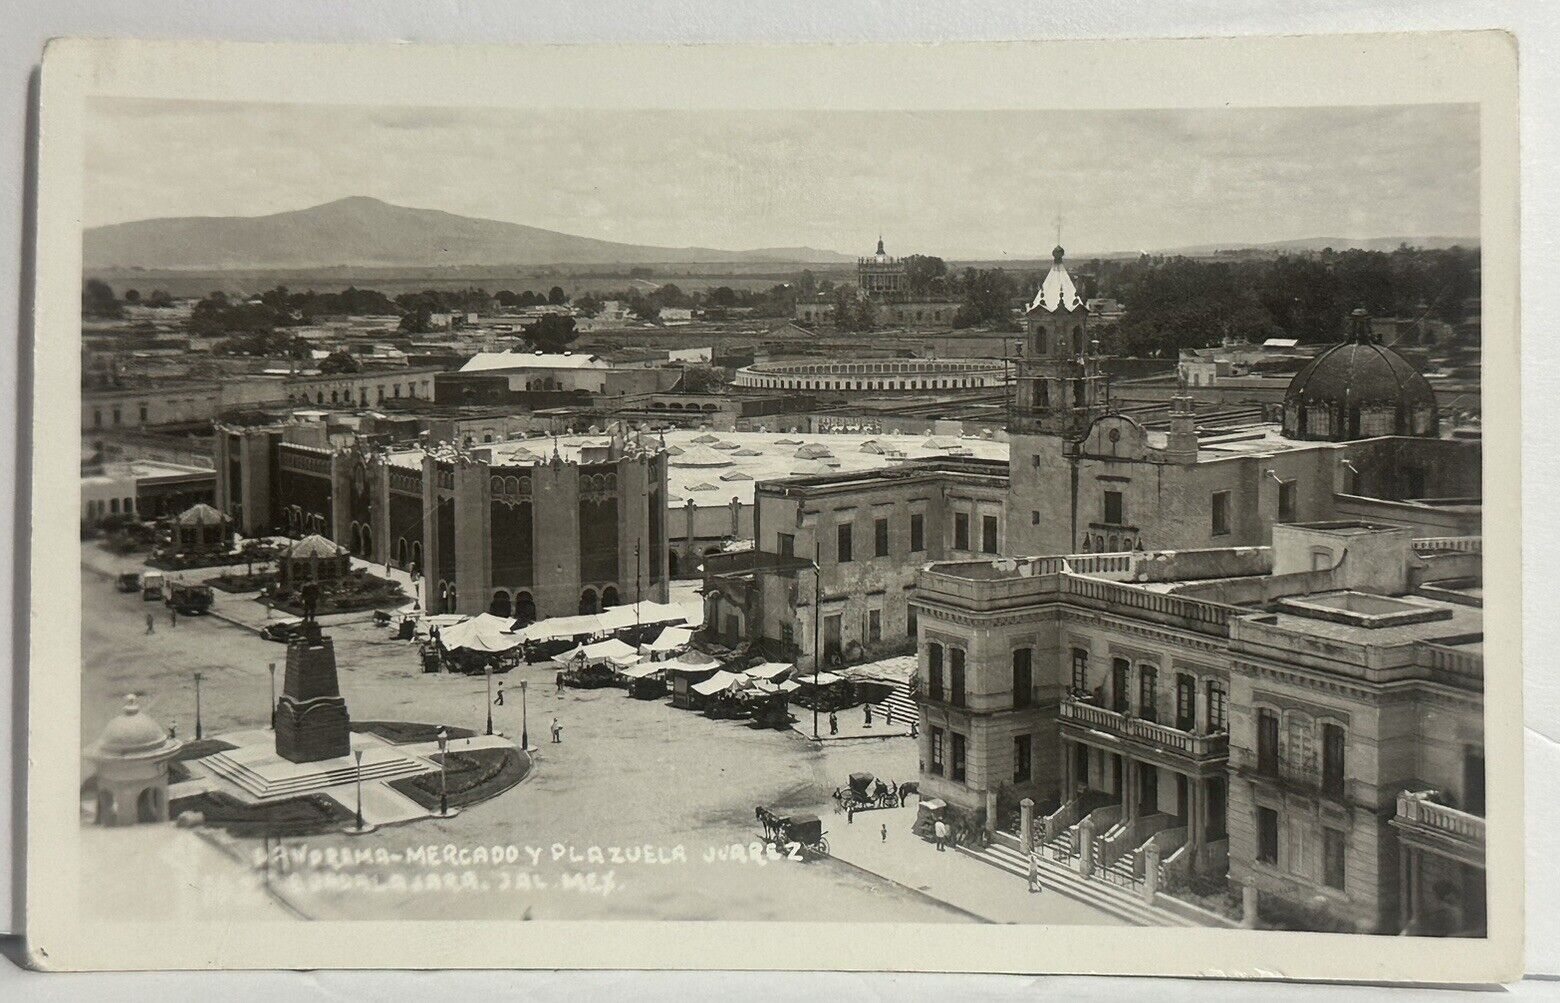 Juarez Mexico Postcard Rppc Aerial View Photo Mercado Market Plaza